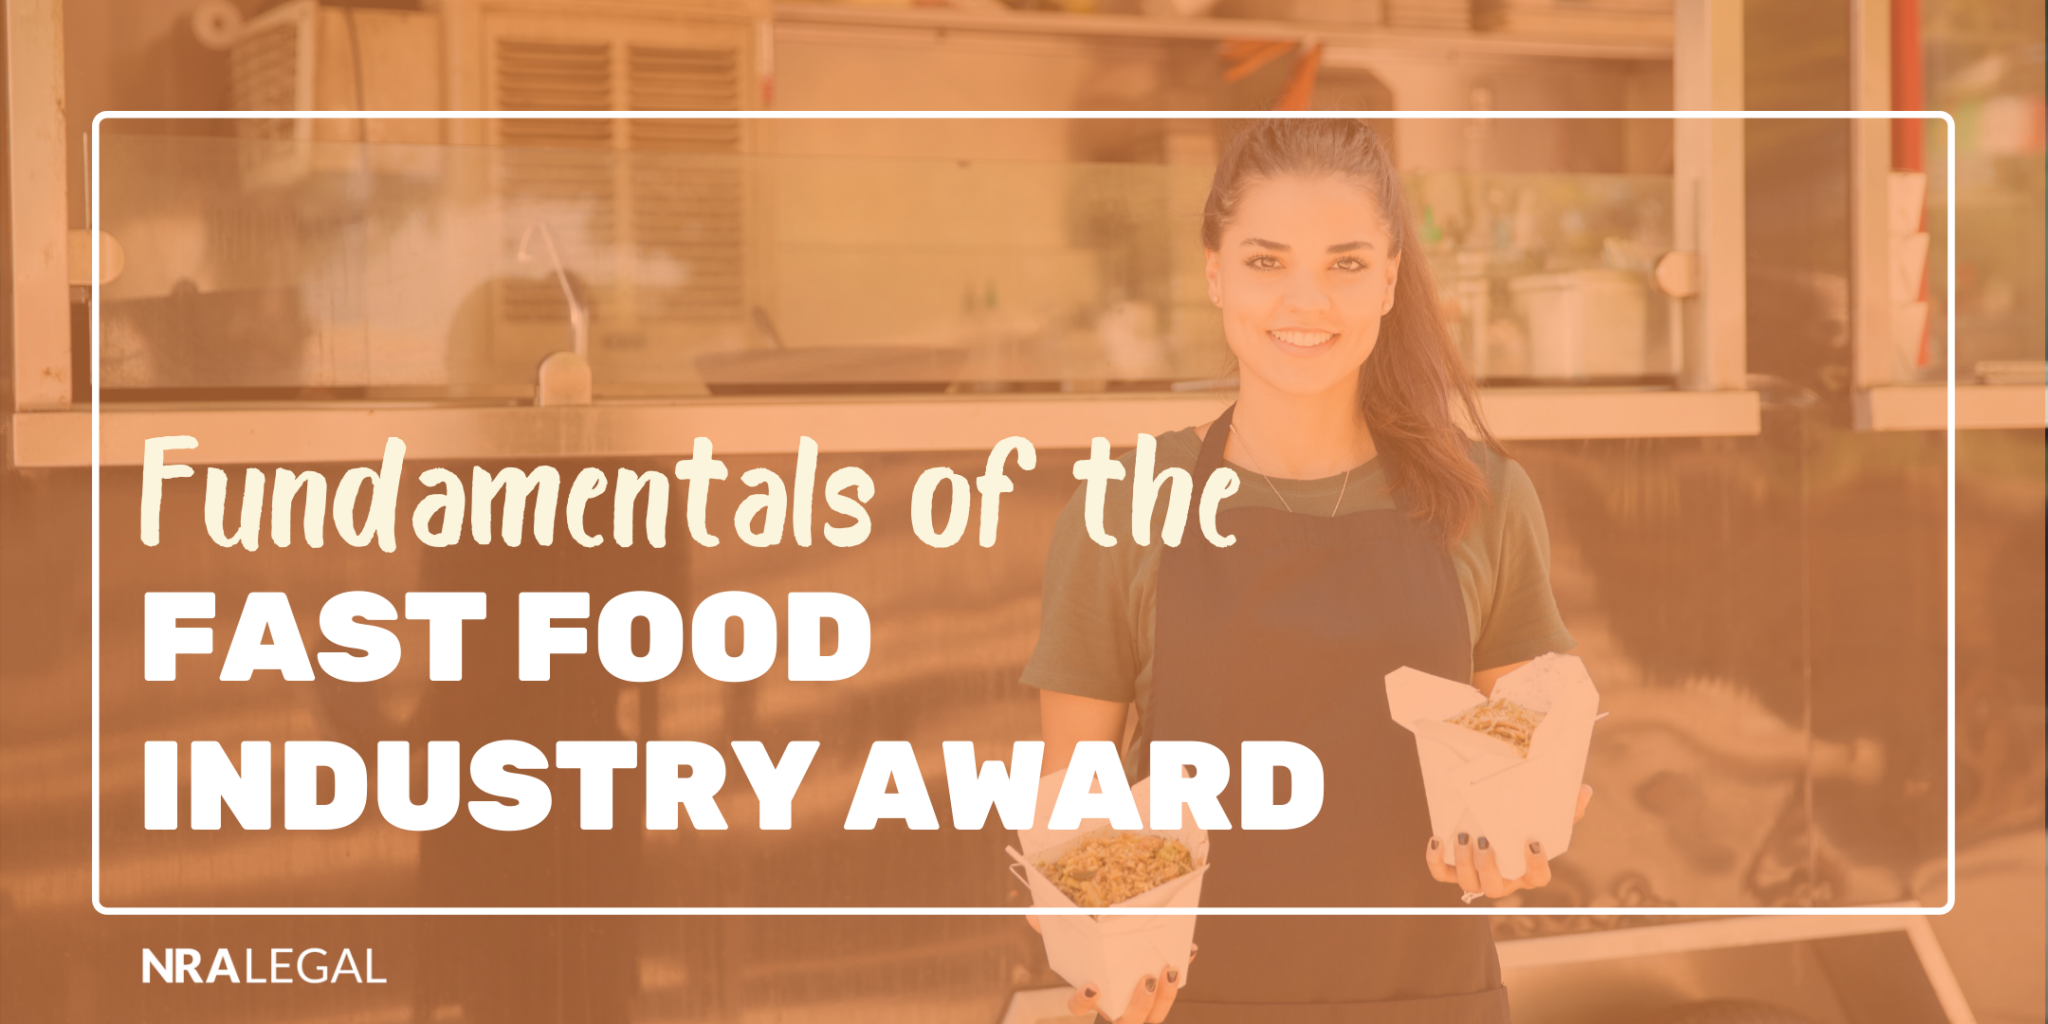 Fast Food Industry Award Webinar